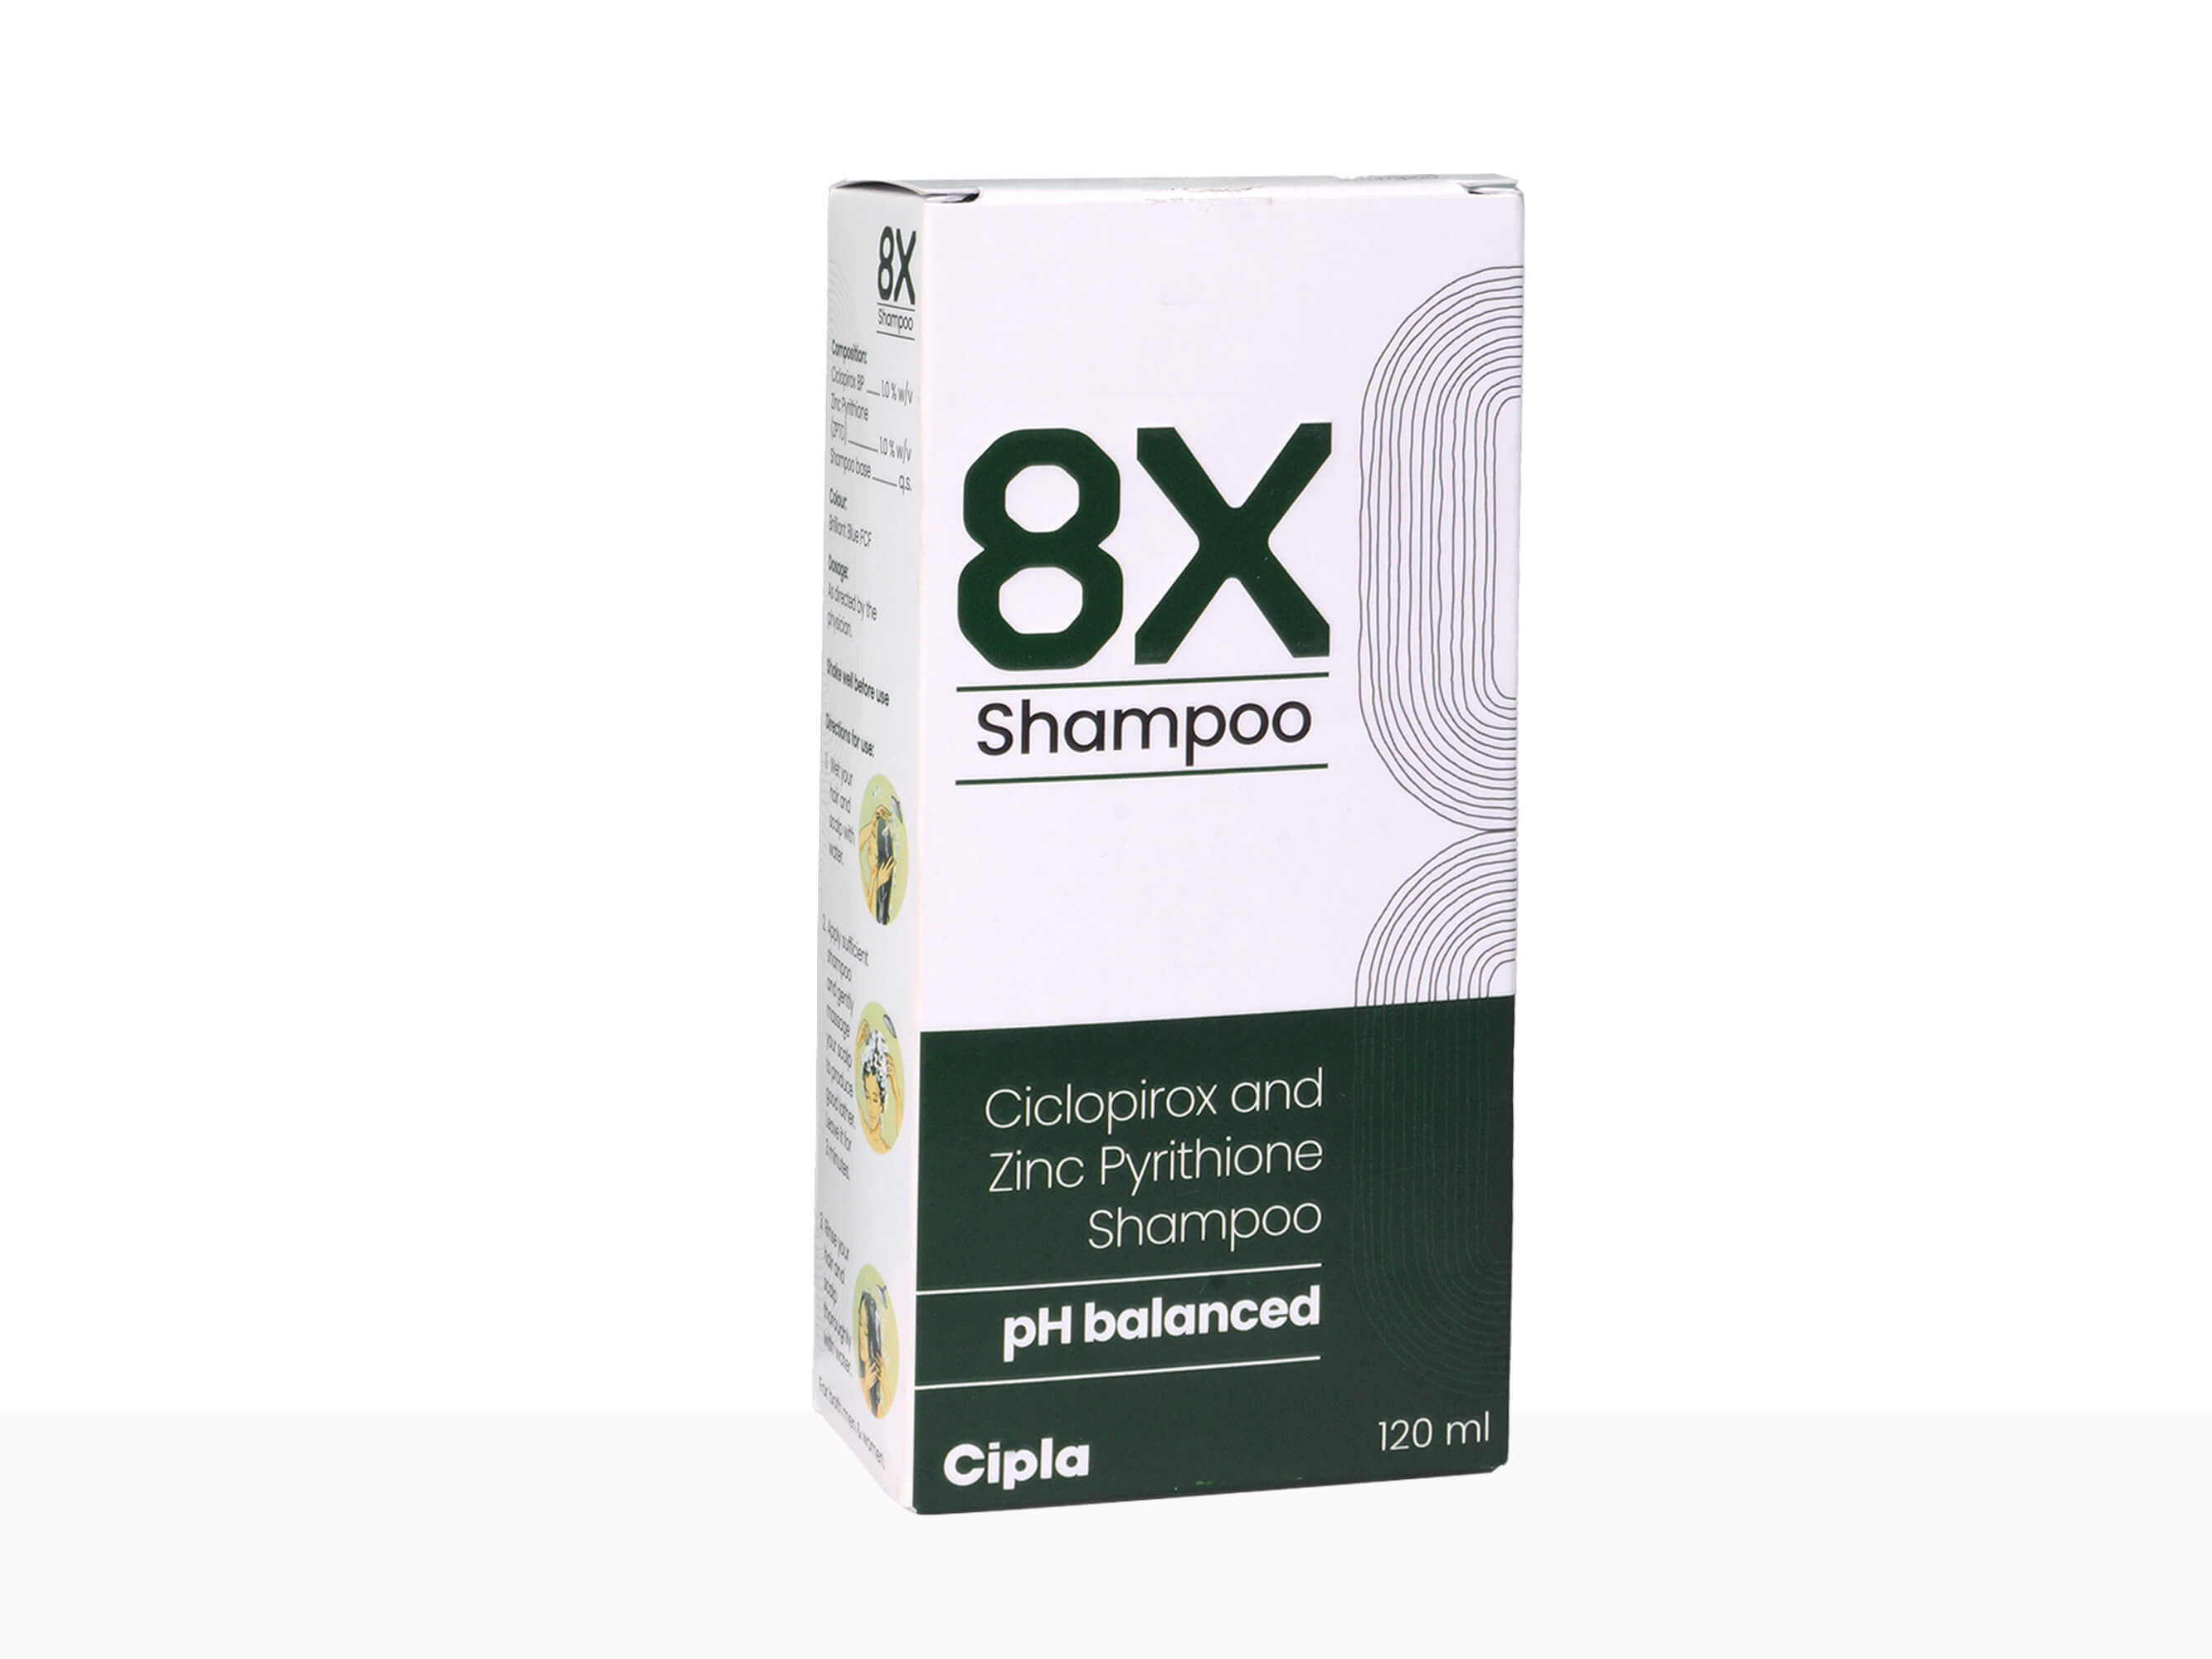 8x Shampoo - Clinikally